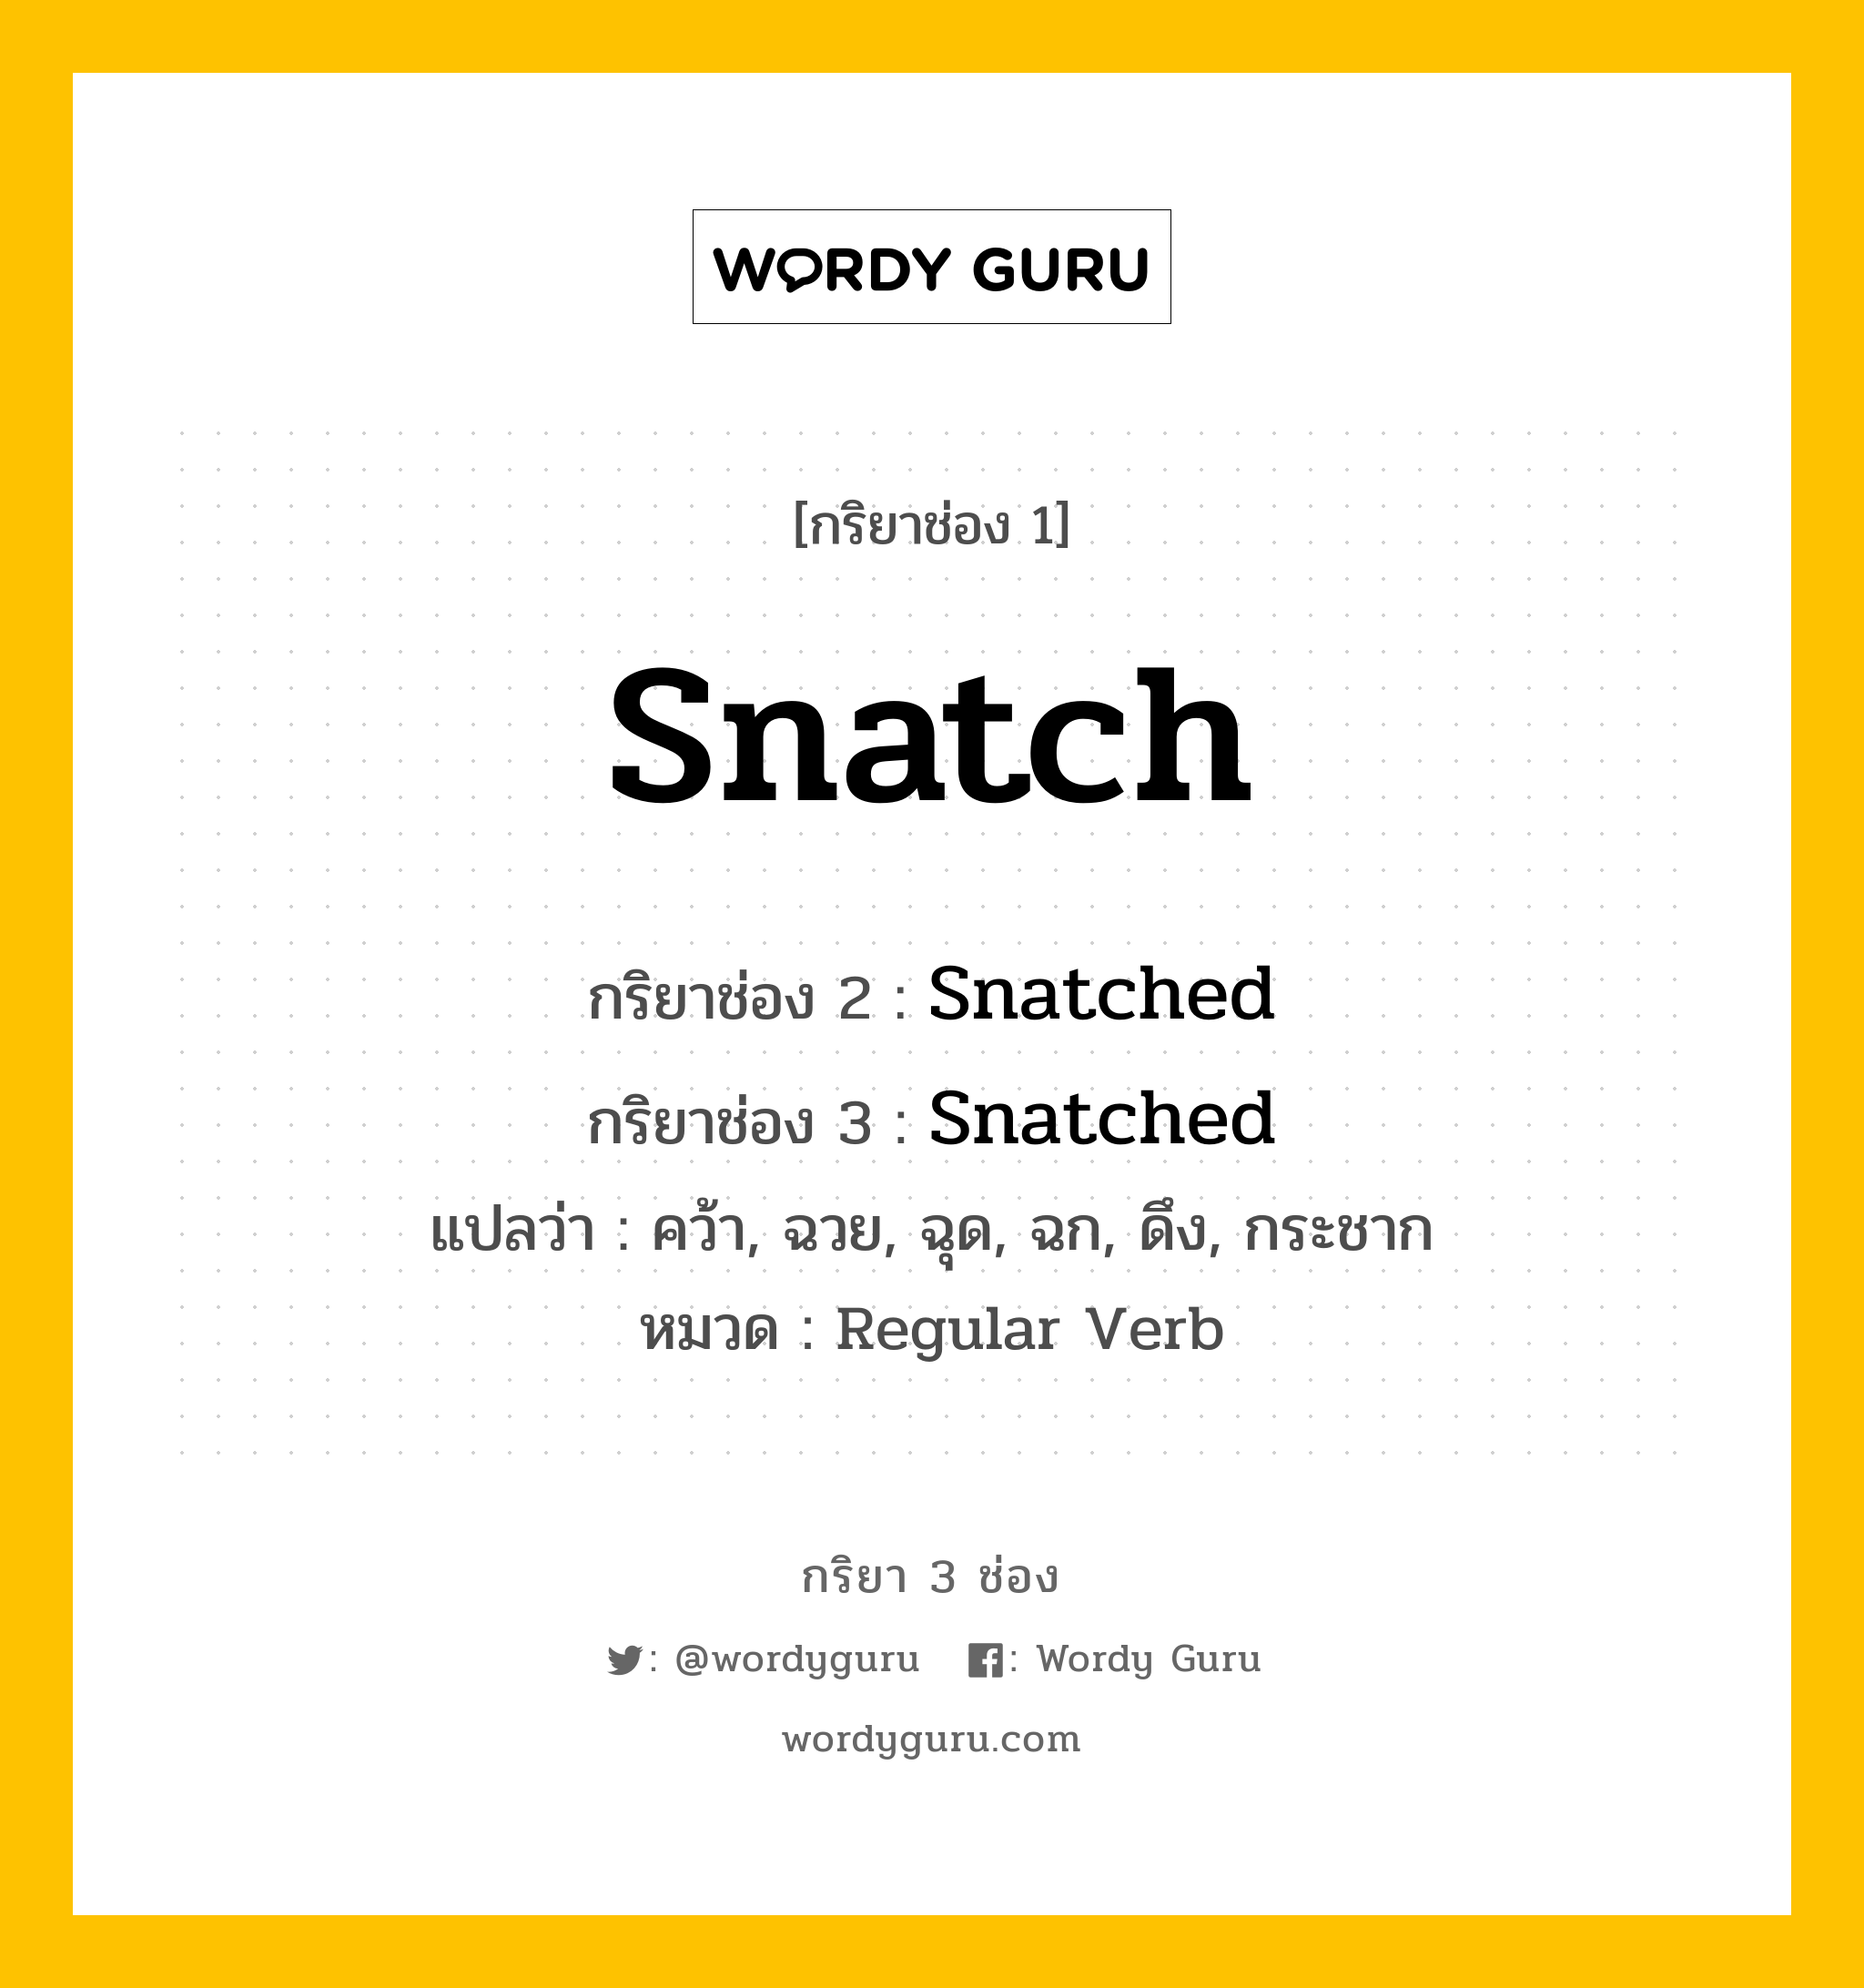 กริยา 3 ช่อง ของ Snatch คืออะไร? มาดูคำอ่าน คำแปลกันเลย, กริยาช่อง 1 Snatch กริยาช่อง 2 Snatched กริยาช่อง 3 Snatched แปลว่า คว้า, ฉวย, ฉุด, ฉก, ดึง, กระชาก หมวด Regular Verb หมวด Regular Verb